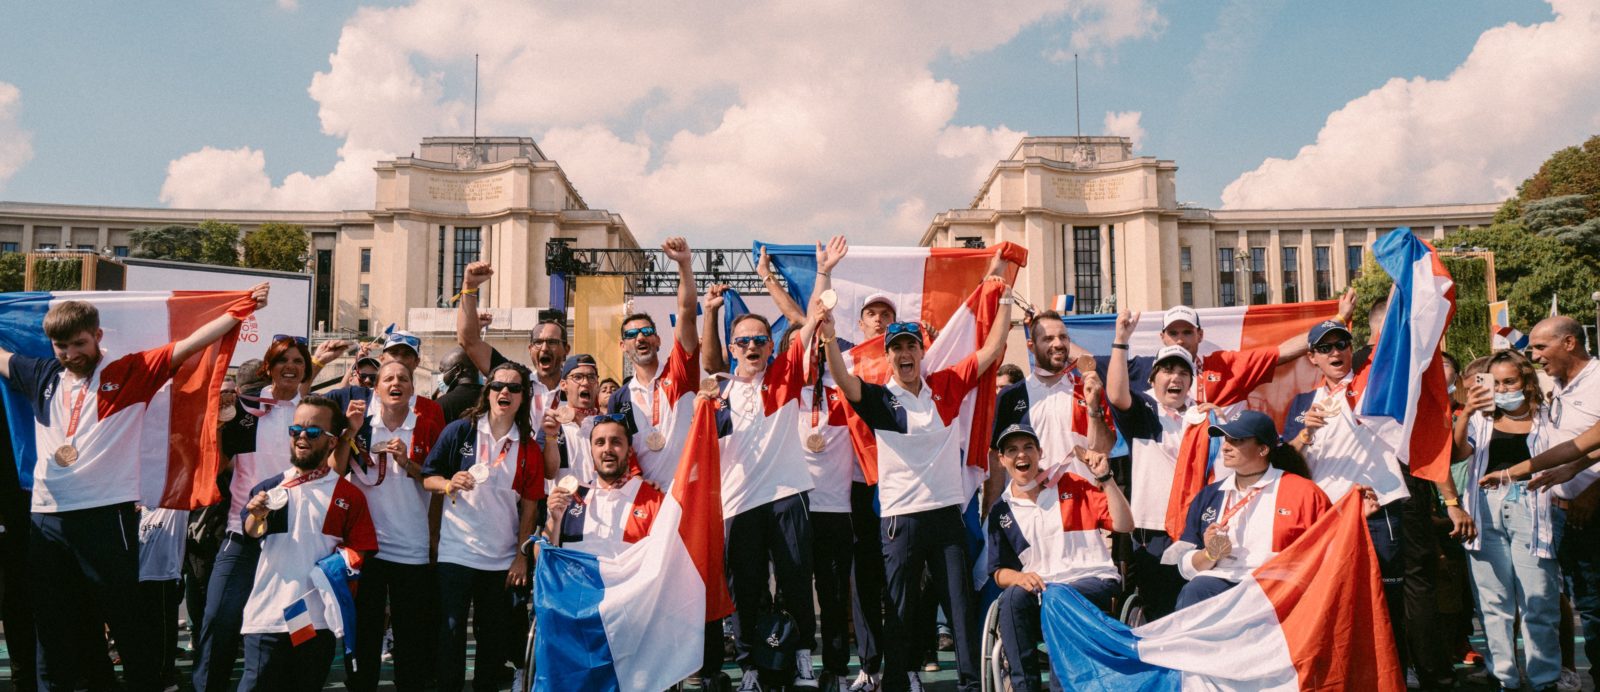 Connaissez vous l'histoire des drapeaux olympiques et - Ville de Paris